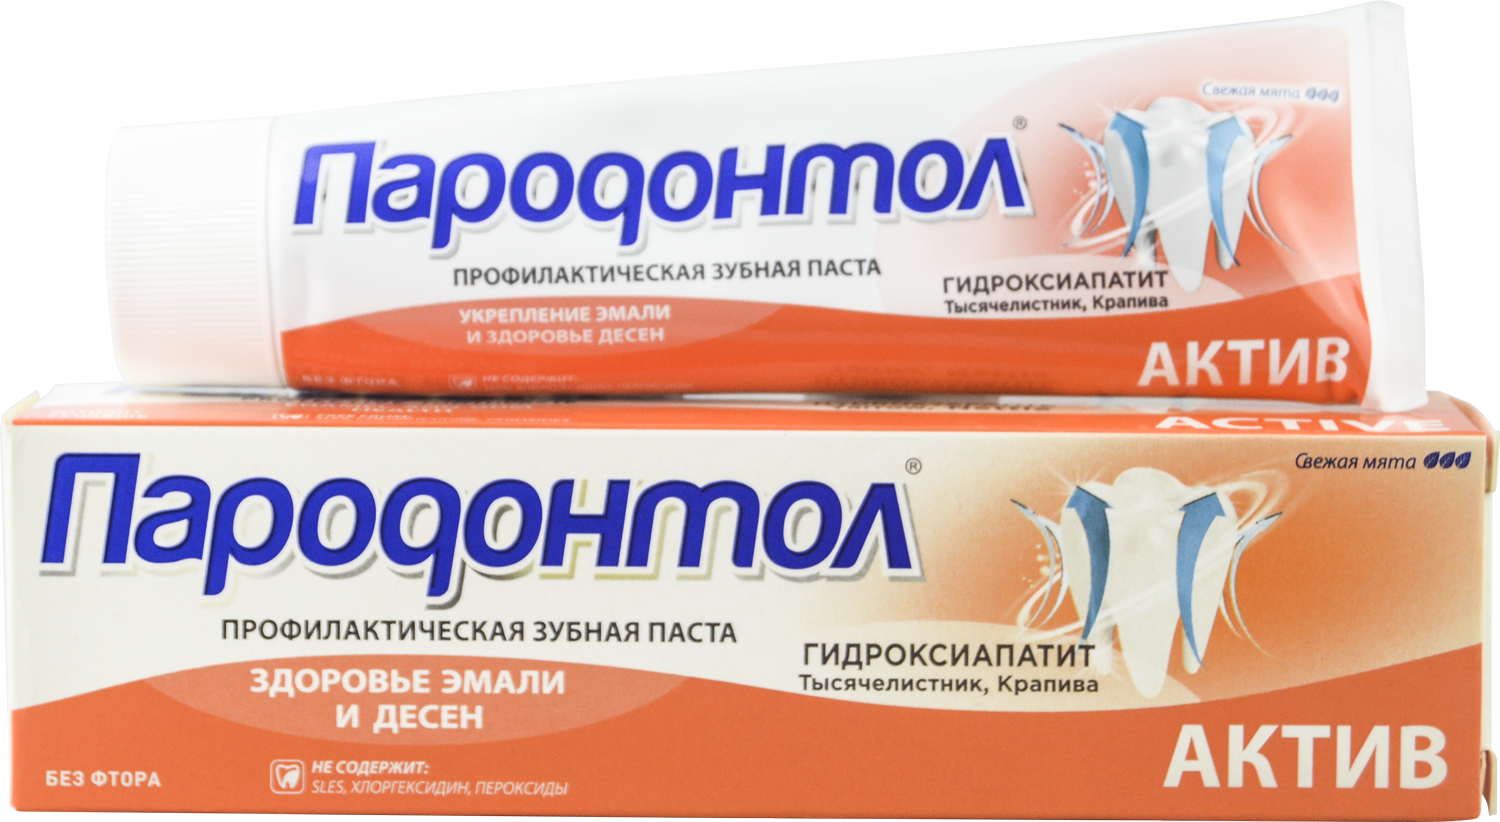 Зубная паста "Пародонтол" ("Parodontol") Актив 124 гр.